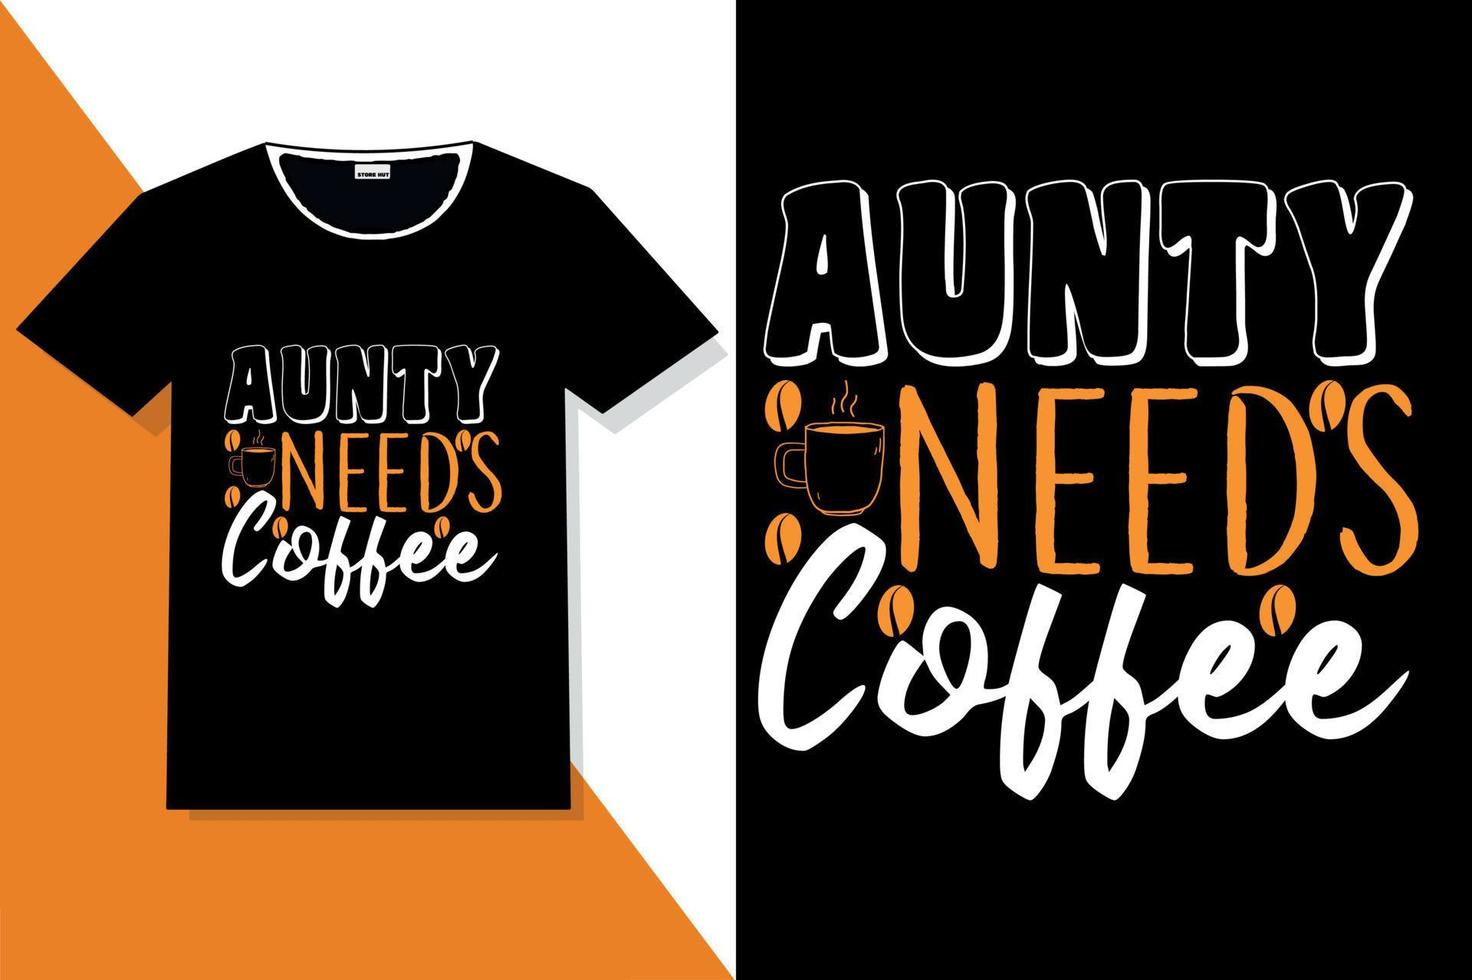 Kaffee-Typografie-T-Shirt-Design vektor